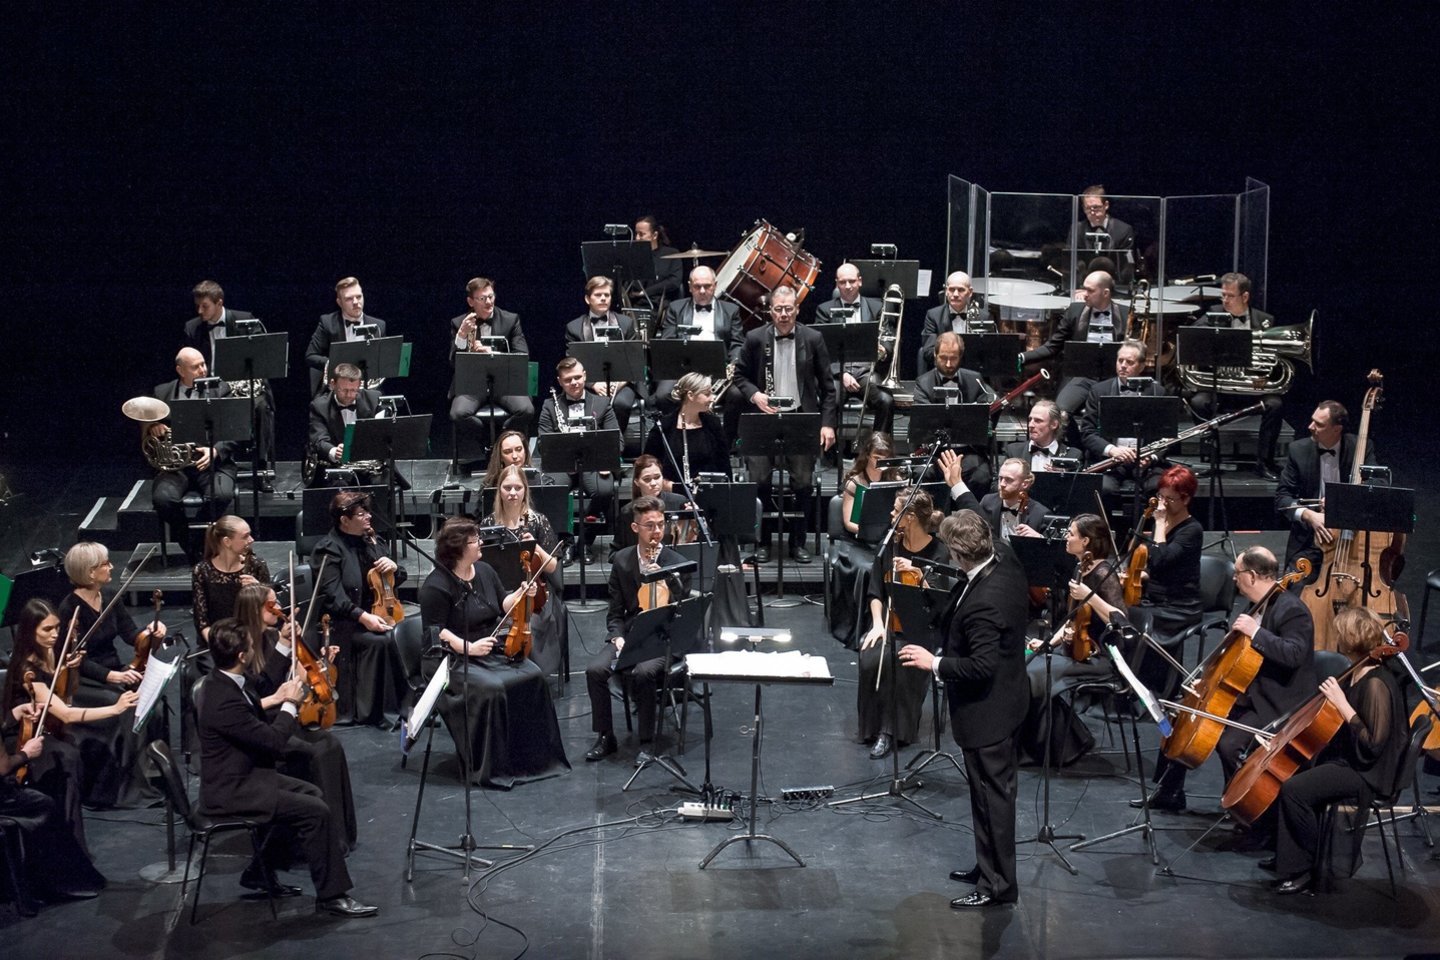 Klaipėdos valstybinio muzikinio teatro simfoninis orkestras Žvejų rūmuose surengė įspūdingą jubiliejinį koncertą "Istorijos perpetuum mobile"<br> O.Kasabovos nuotr.